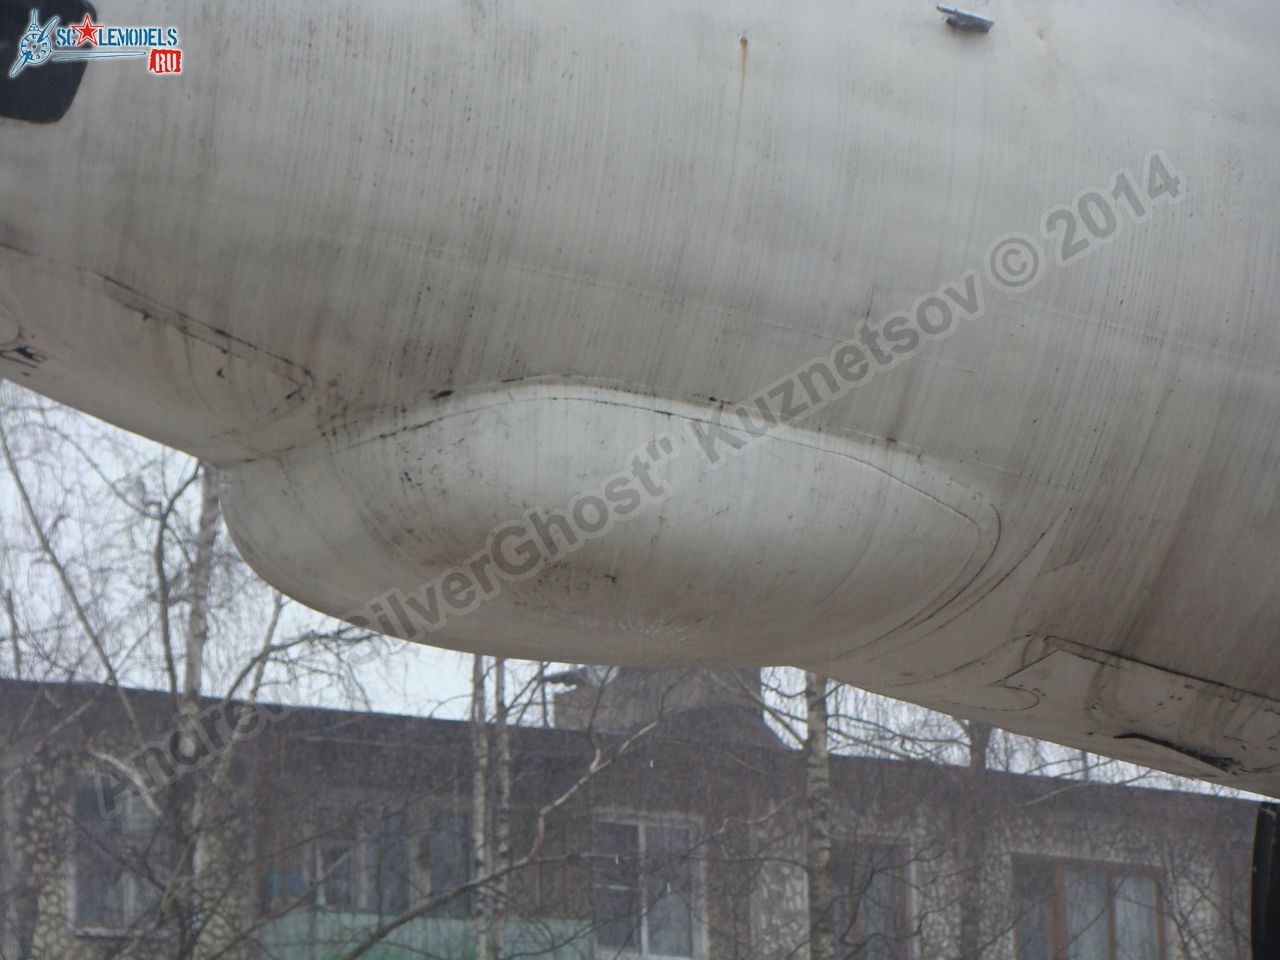 Tu-16_Badger_Smolensk_0003.jpg